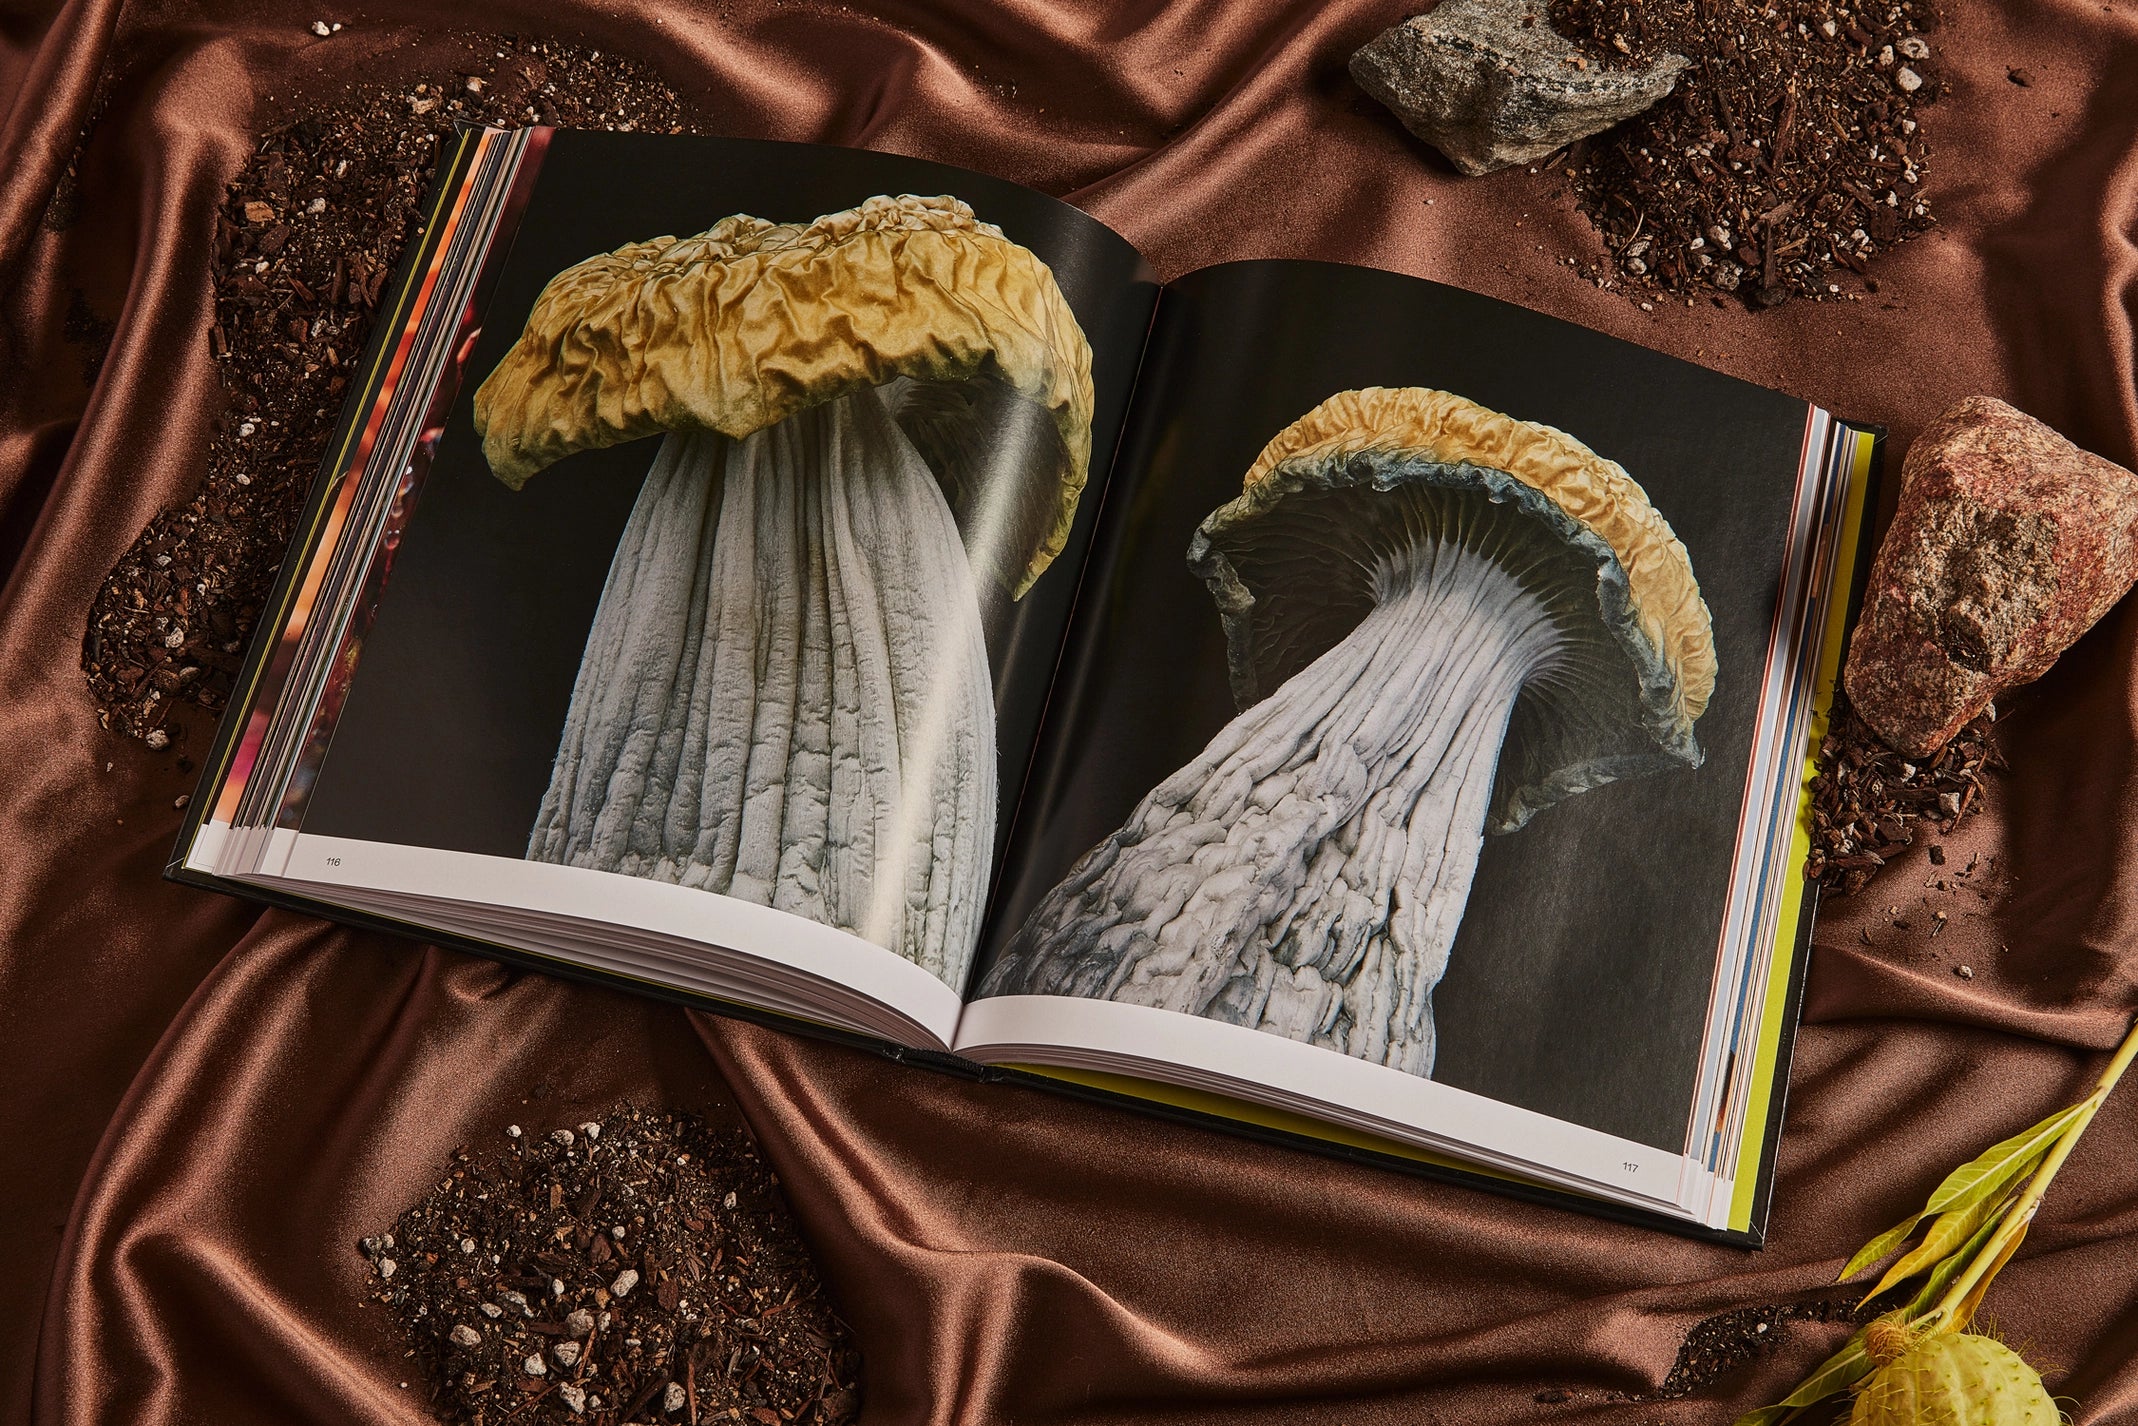 Spores: magic mushroom photography book